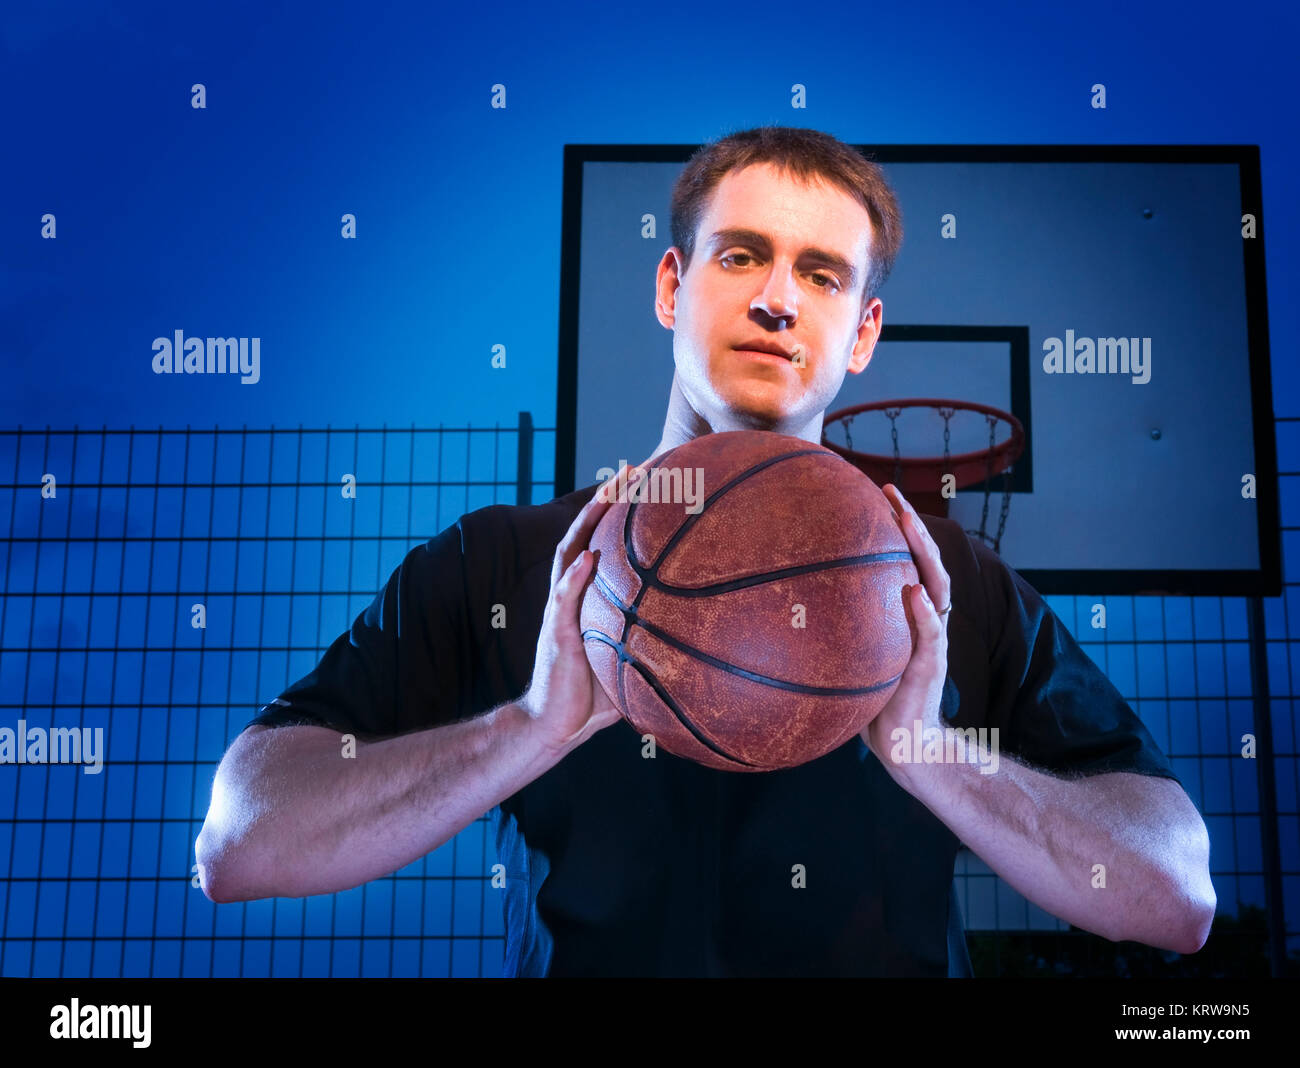 Frontale Oberkörper-Ansicht eines jungen Mannes mit Basket nächtlich vor blauen Hintergrund mit Basketballkorb. Foto Stock